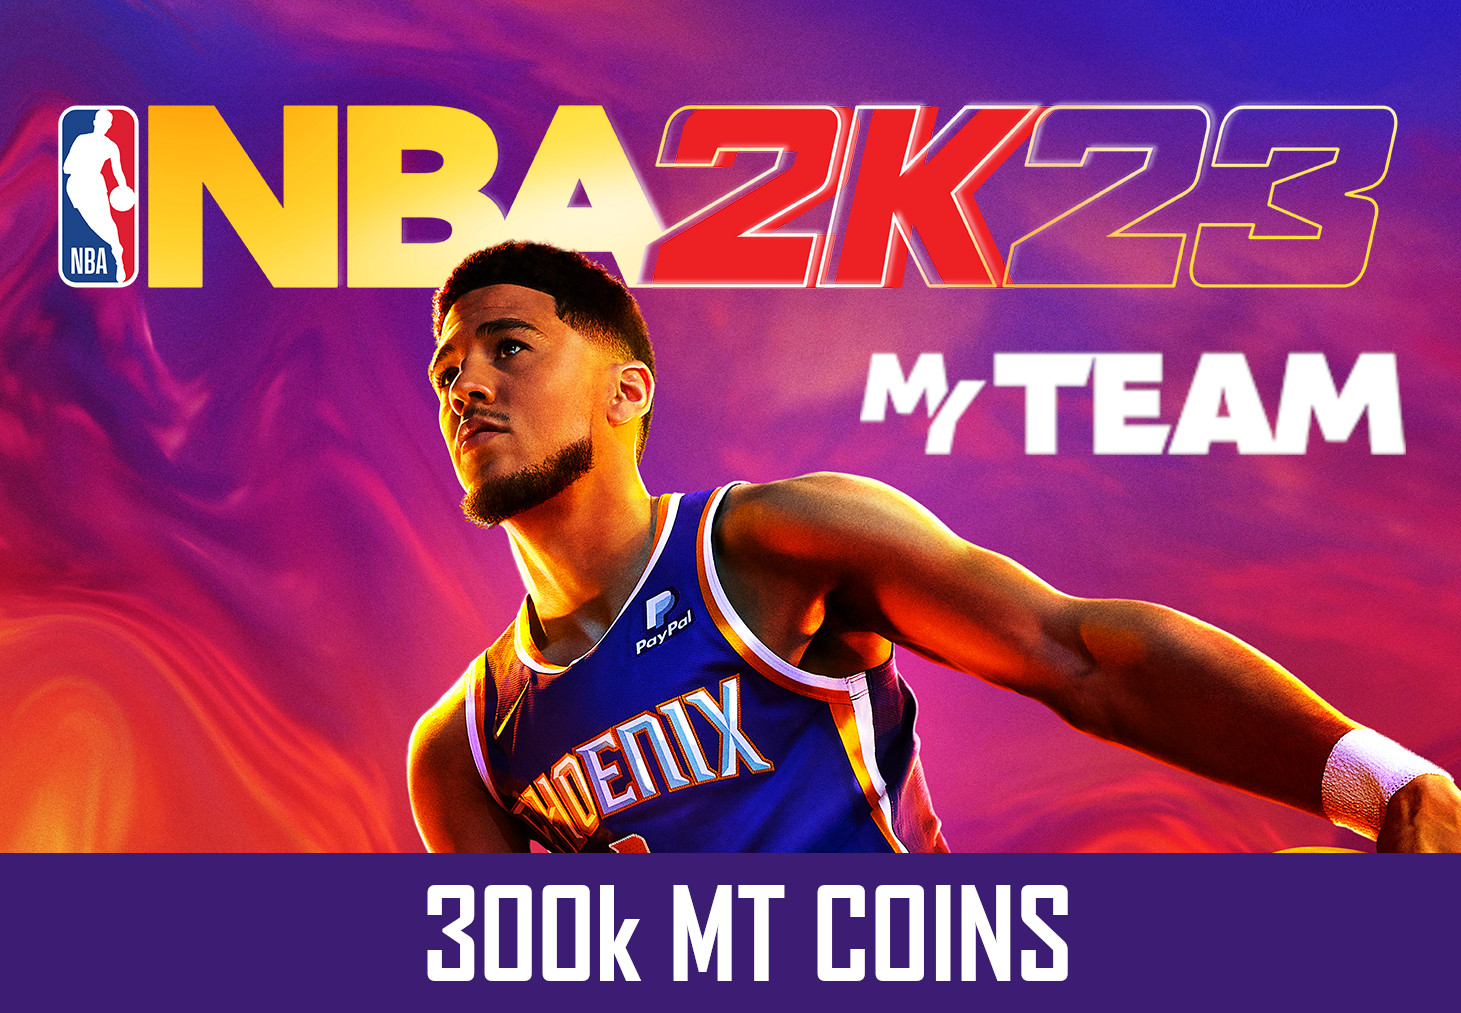 NBA 2K23 - 300k MT Coins - GLOBAL XBOX One/Series X,S